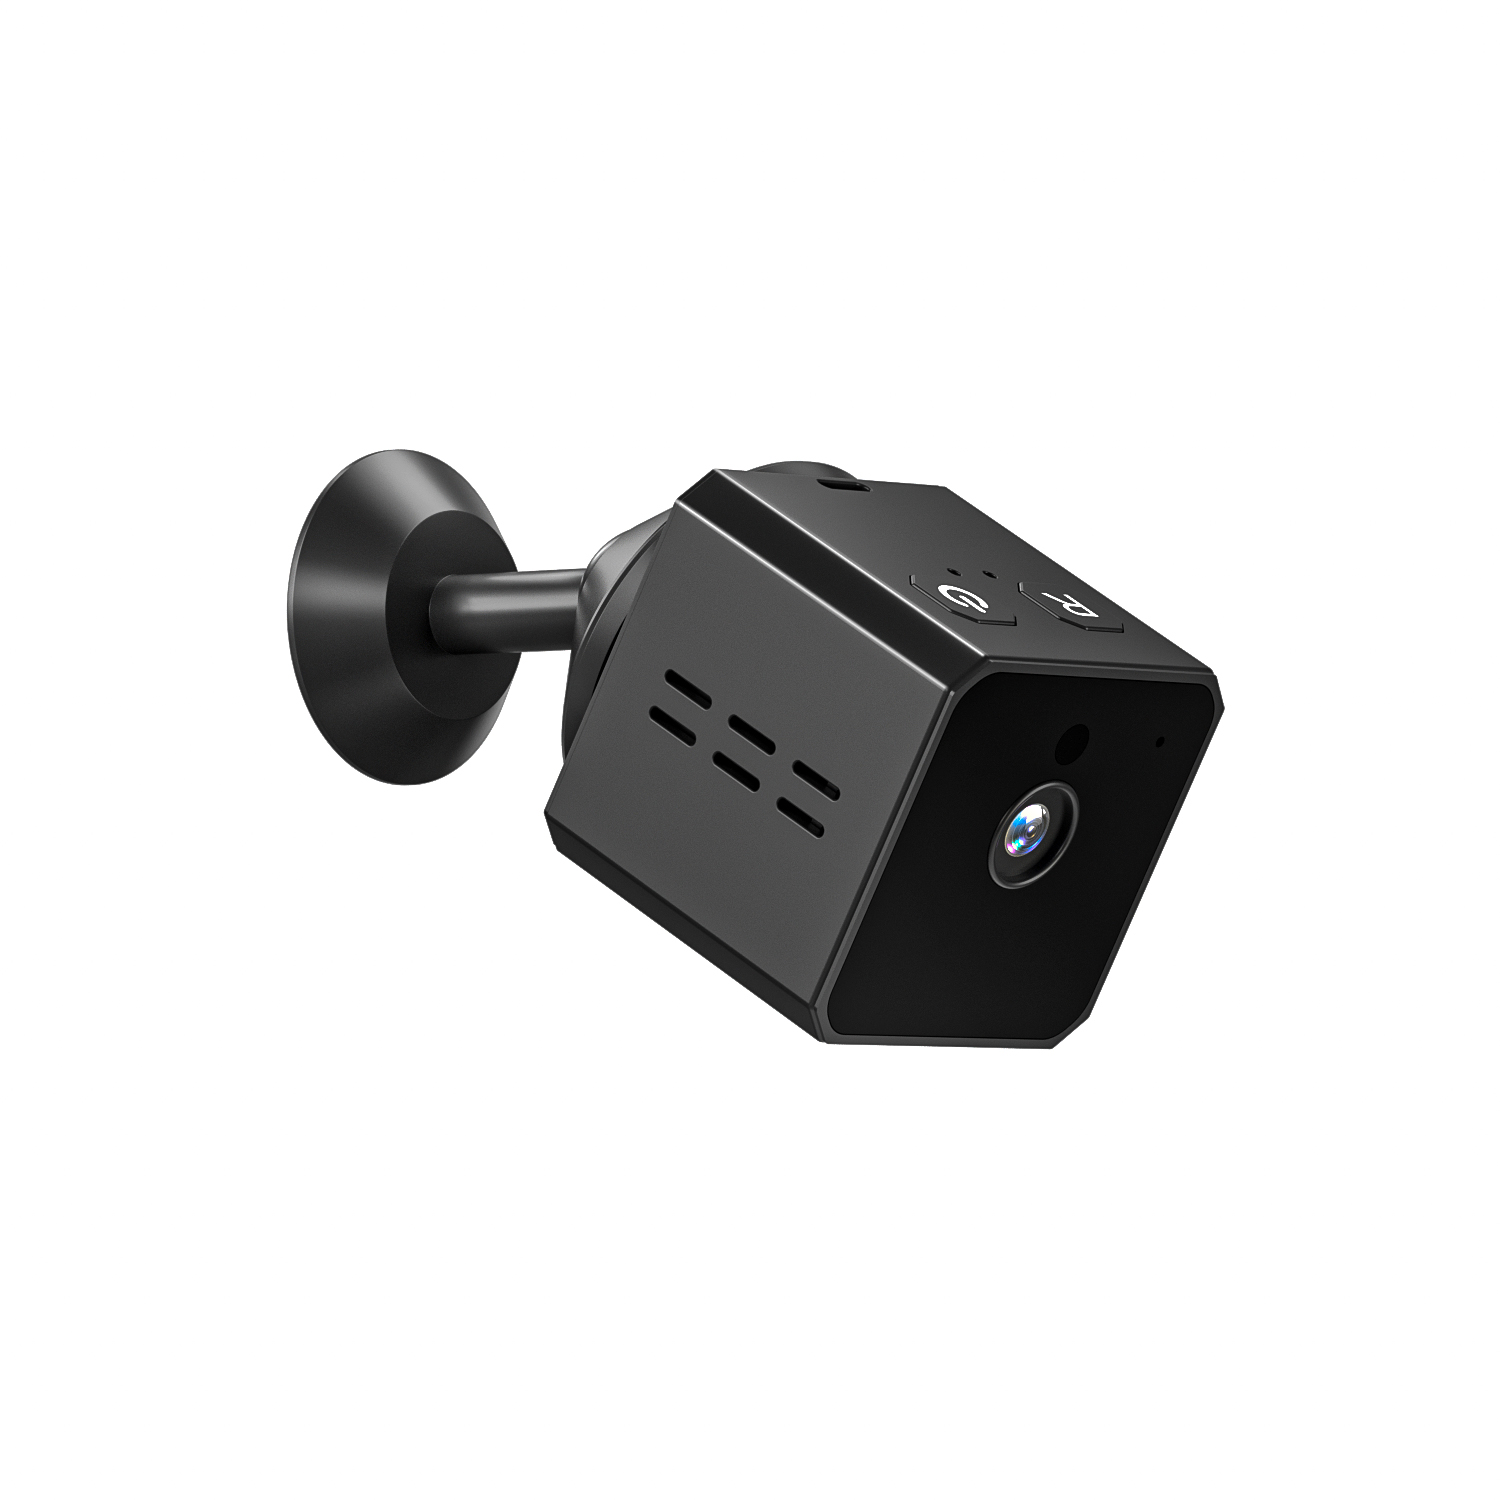 Camera Mini siêu nhỏ MI2 FHD - Lặn 10m - Hình ảnh Full HD - Báo động - Lắp đặt dễ dàng